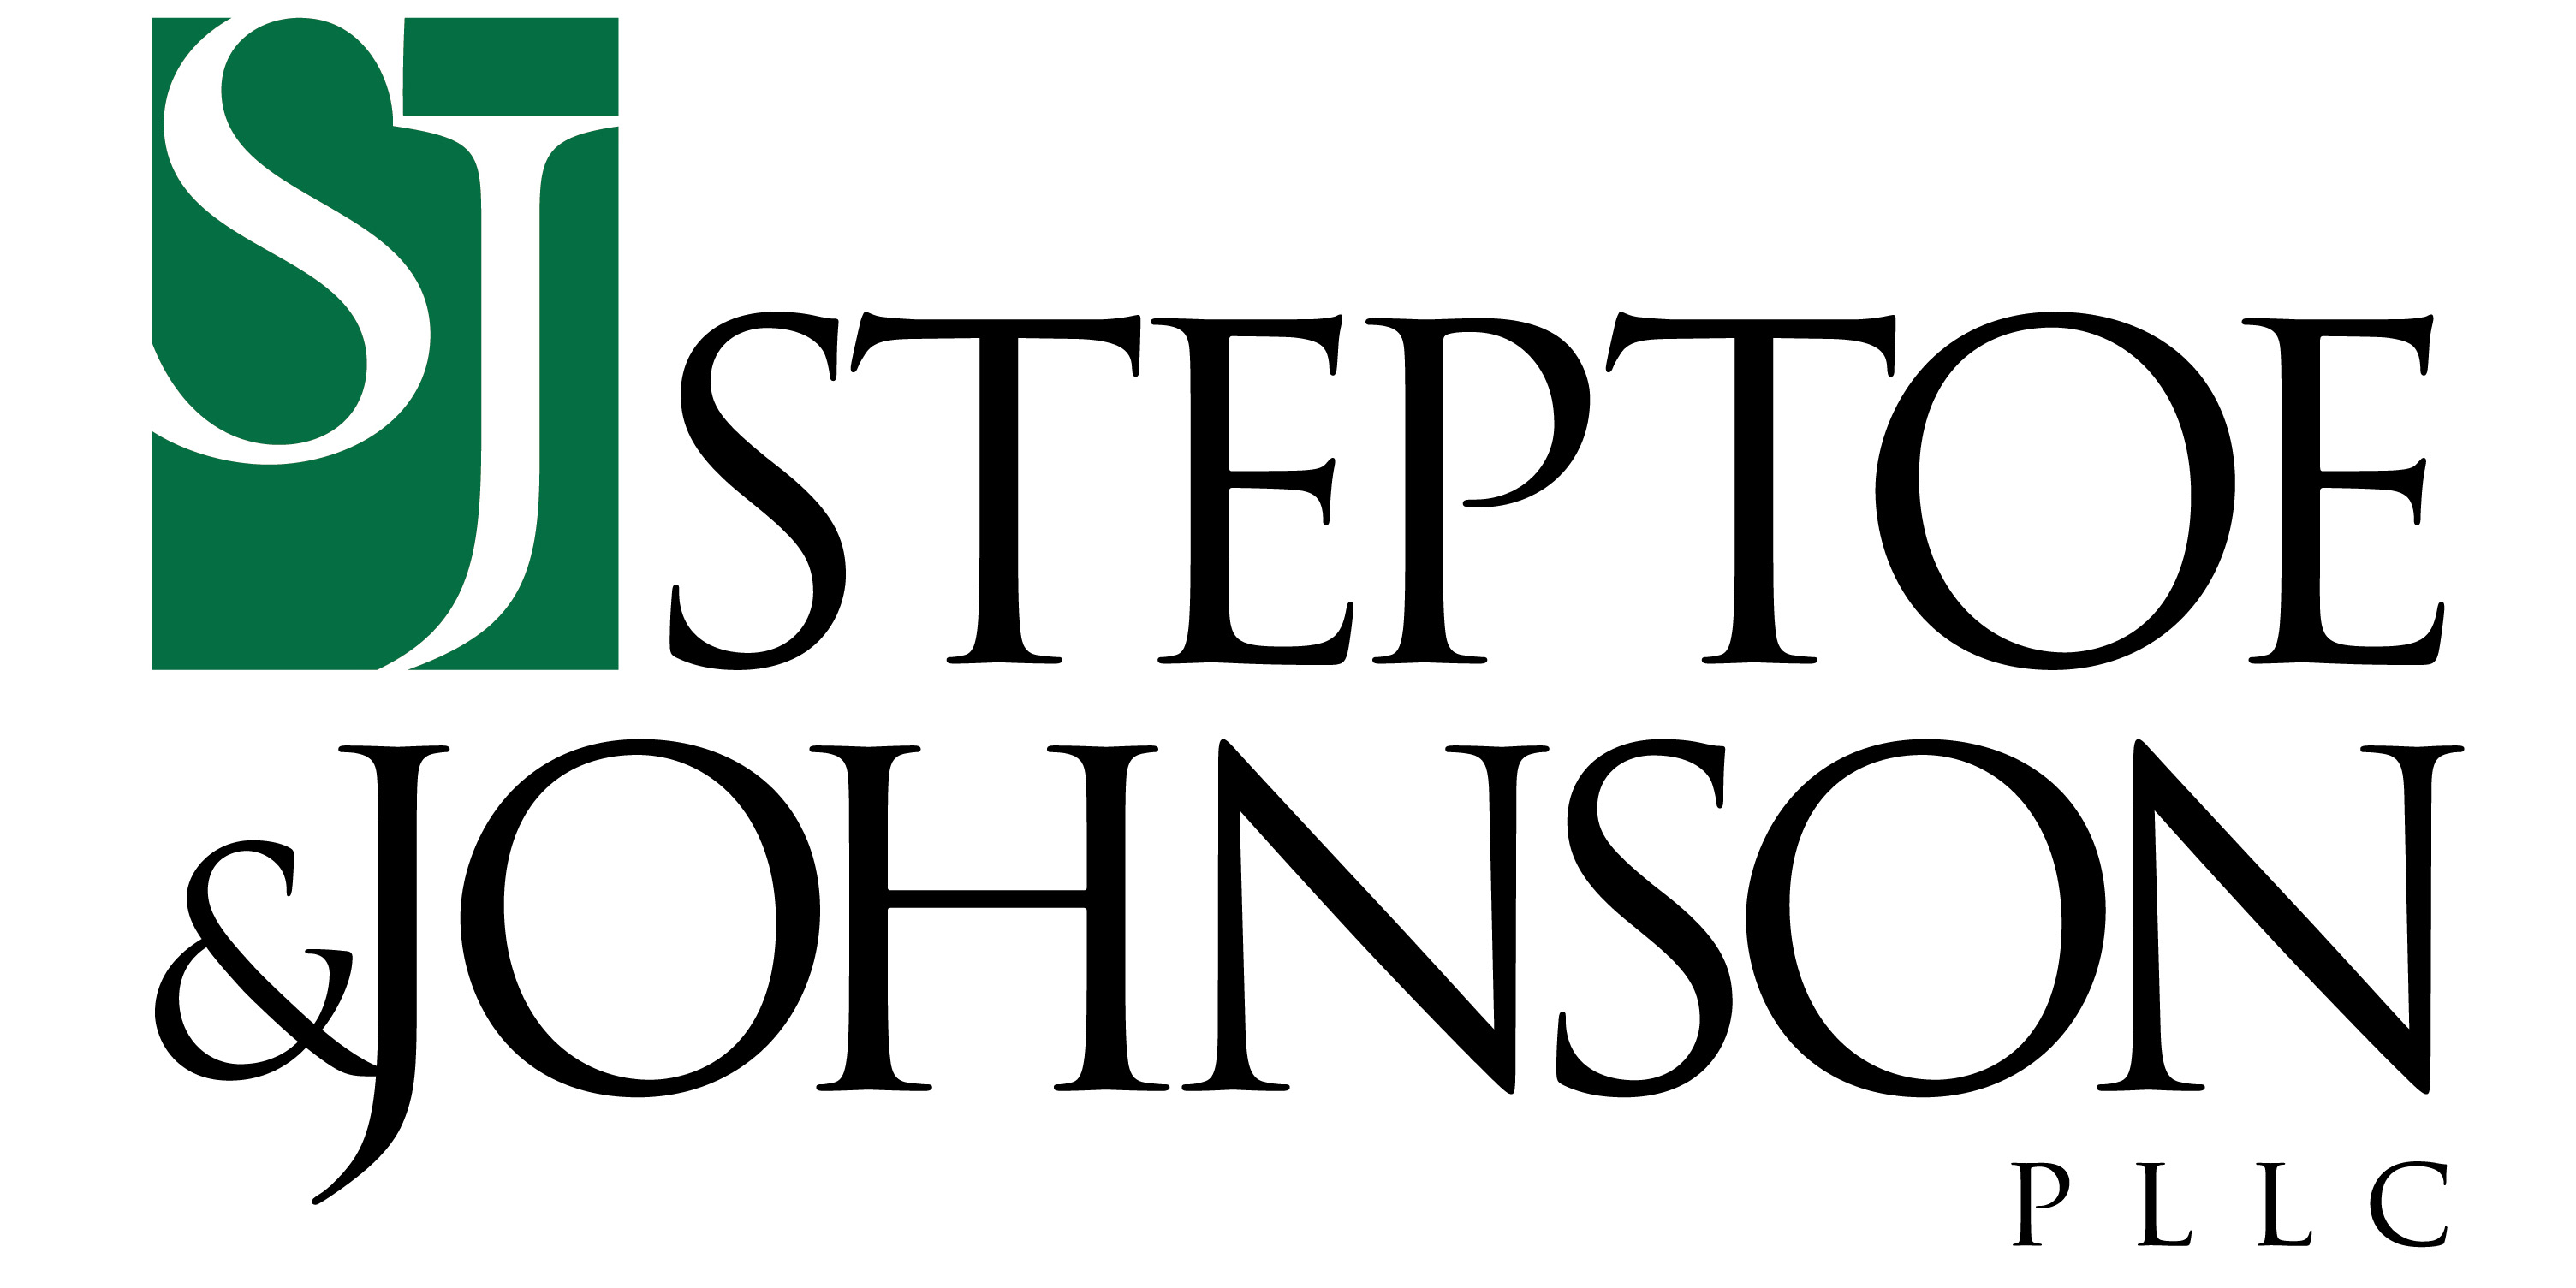 steptoe-johnson-logo-standard.jpg